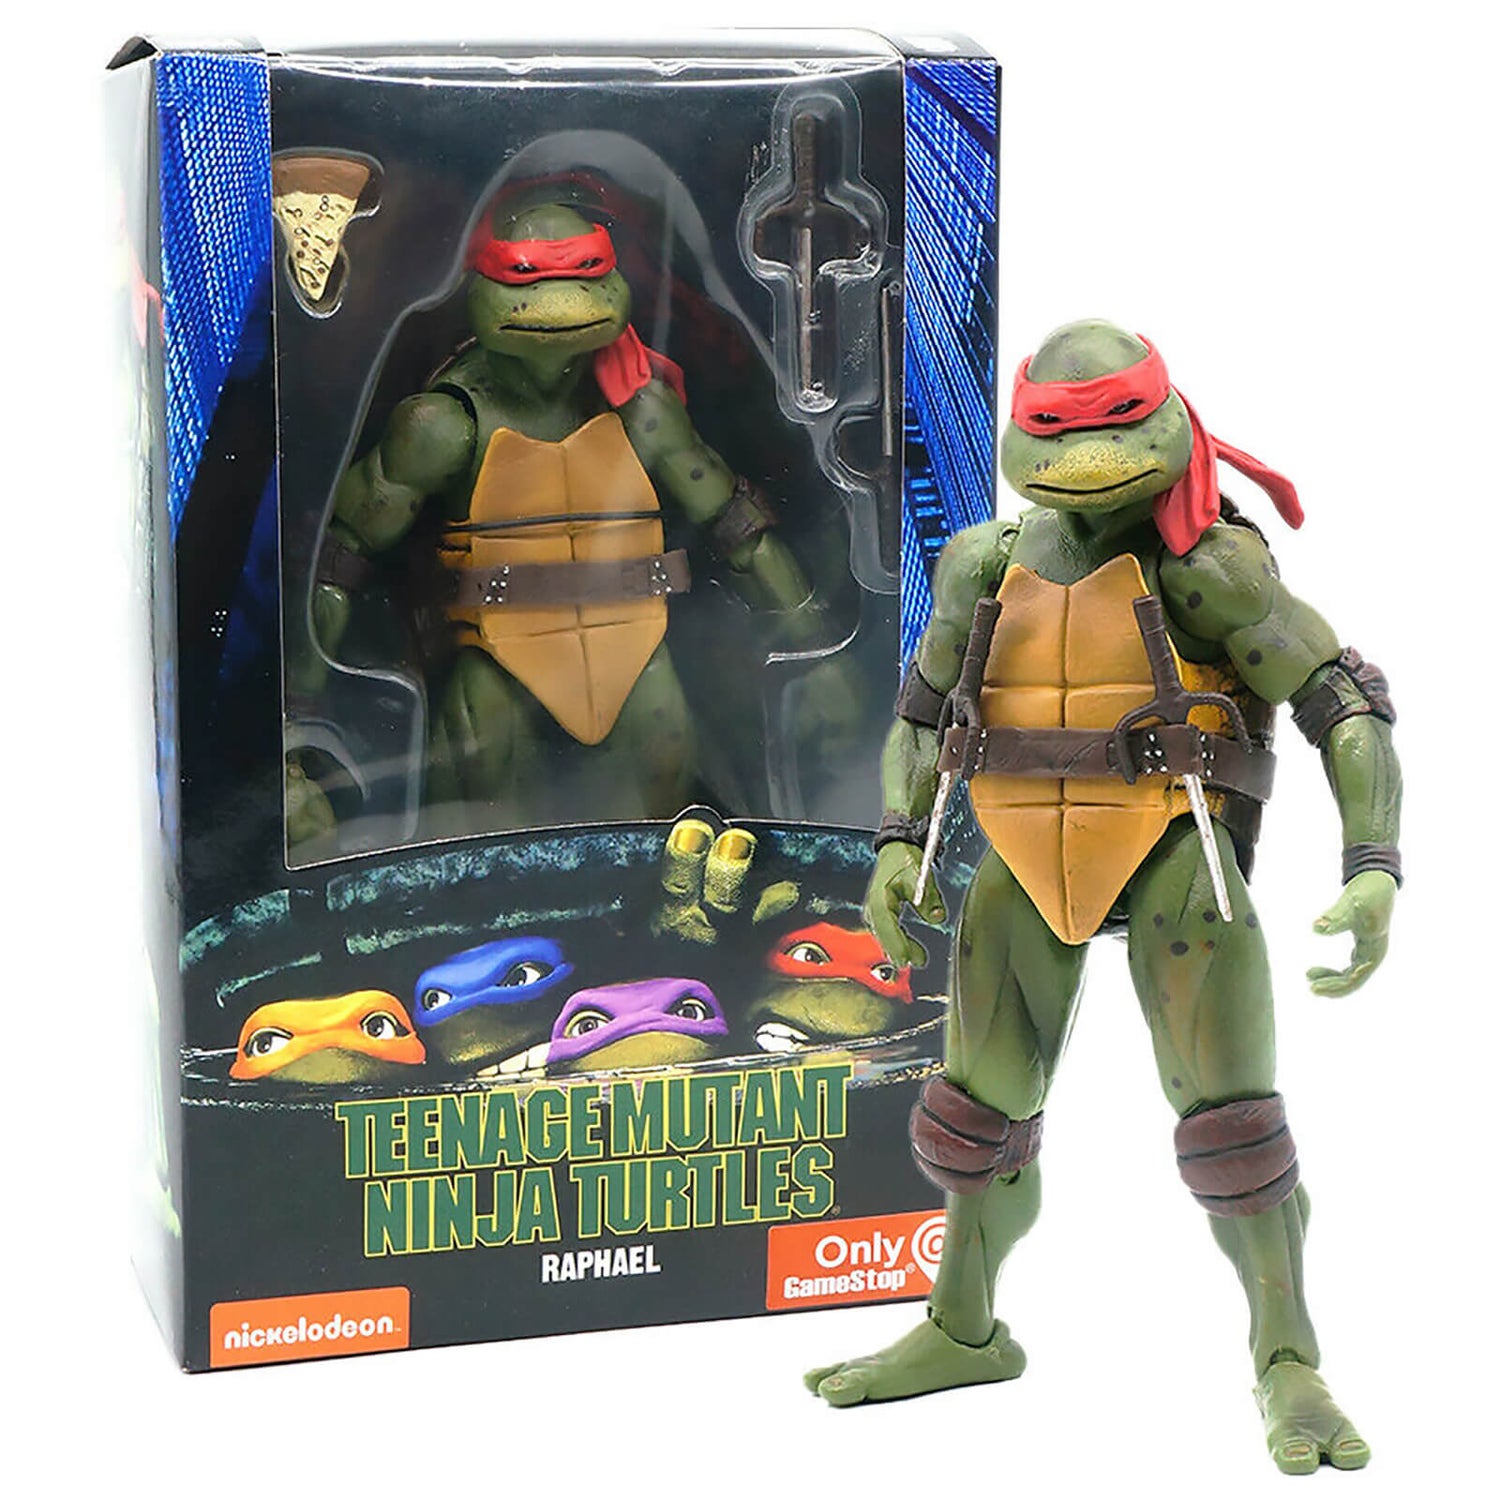 NECA Teenage Mutant Ninja Turtles 7" Figure 1990 Movie Raphael